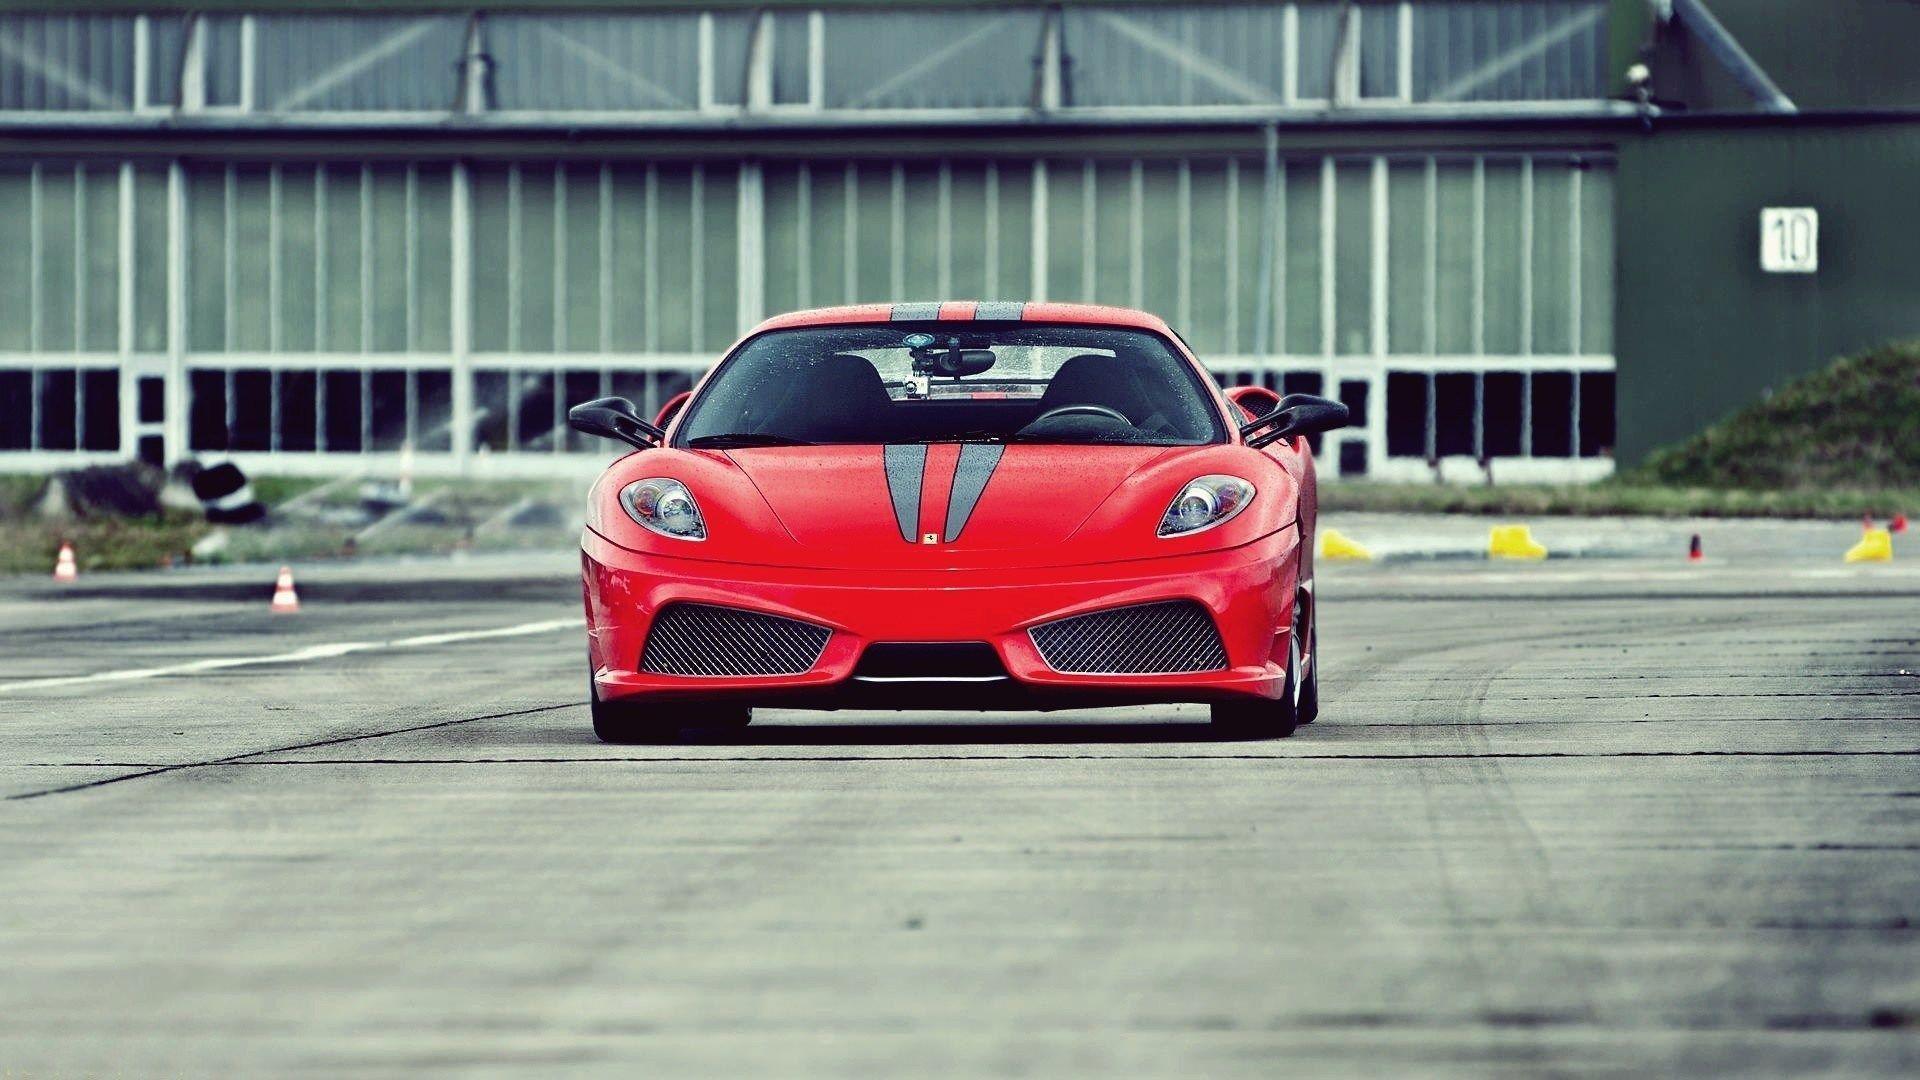 Ferrari F430 Scuderia Test Track Front Photo HD Wallpaper